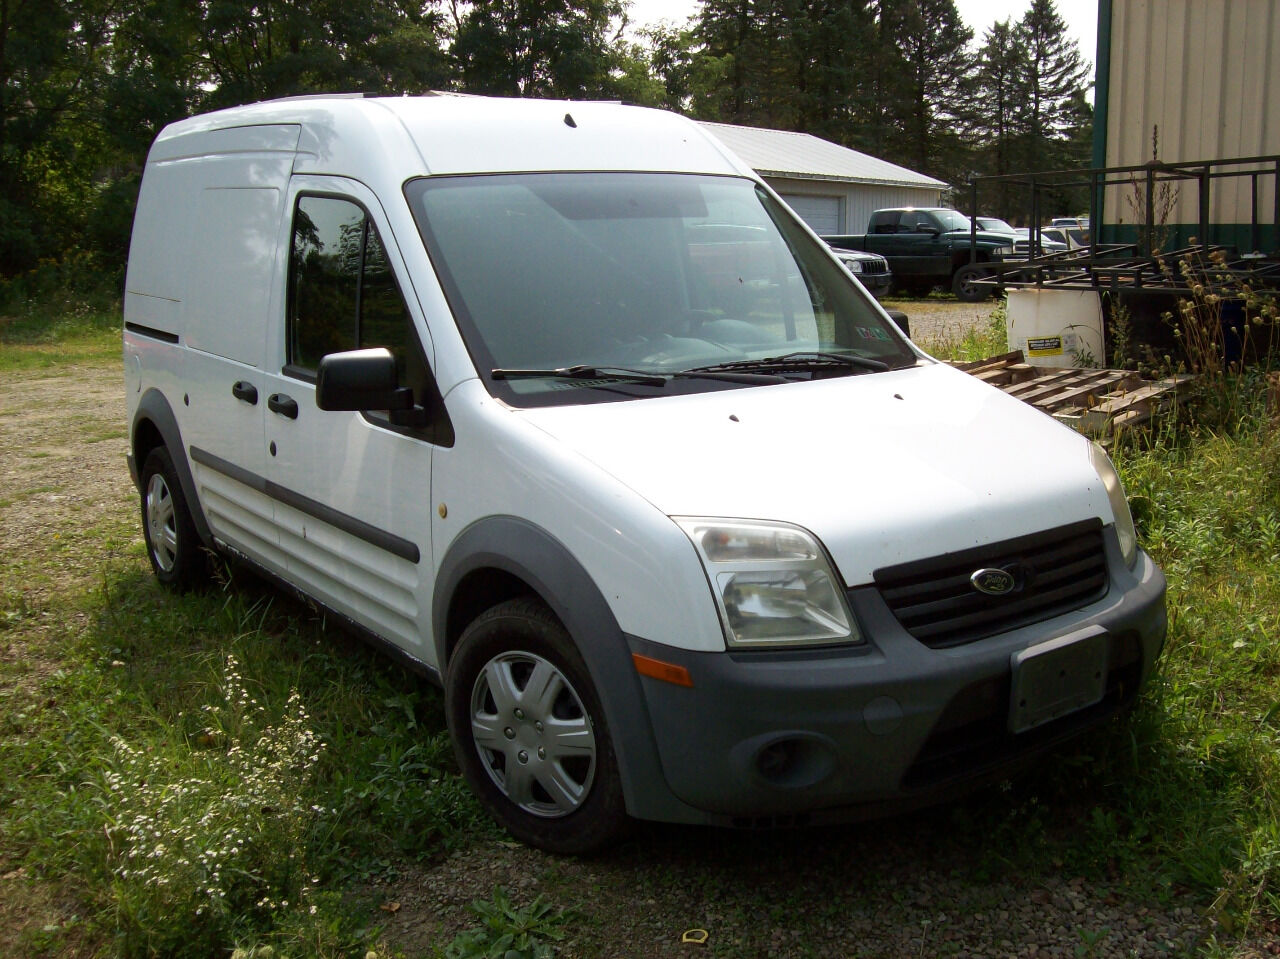 vans for sale northeast